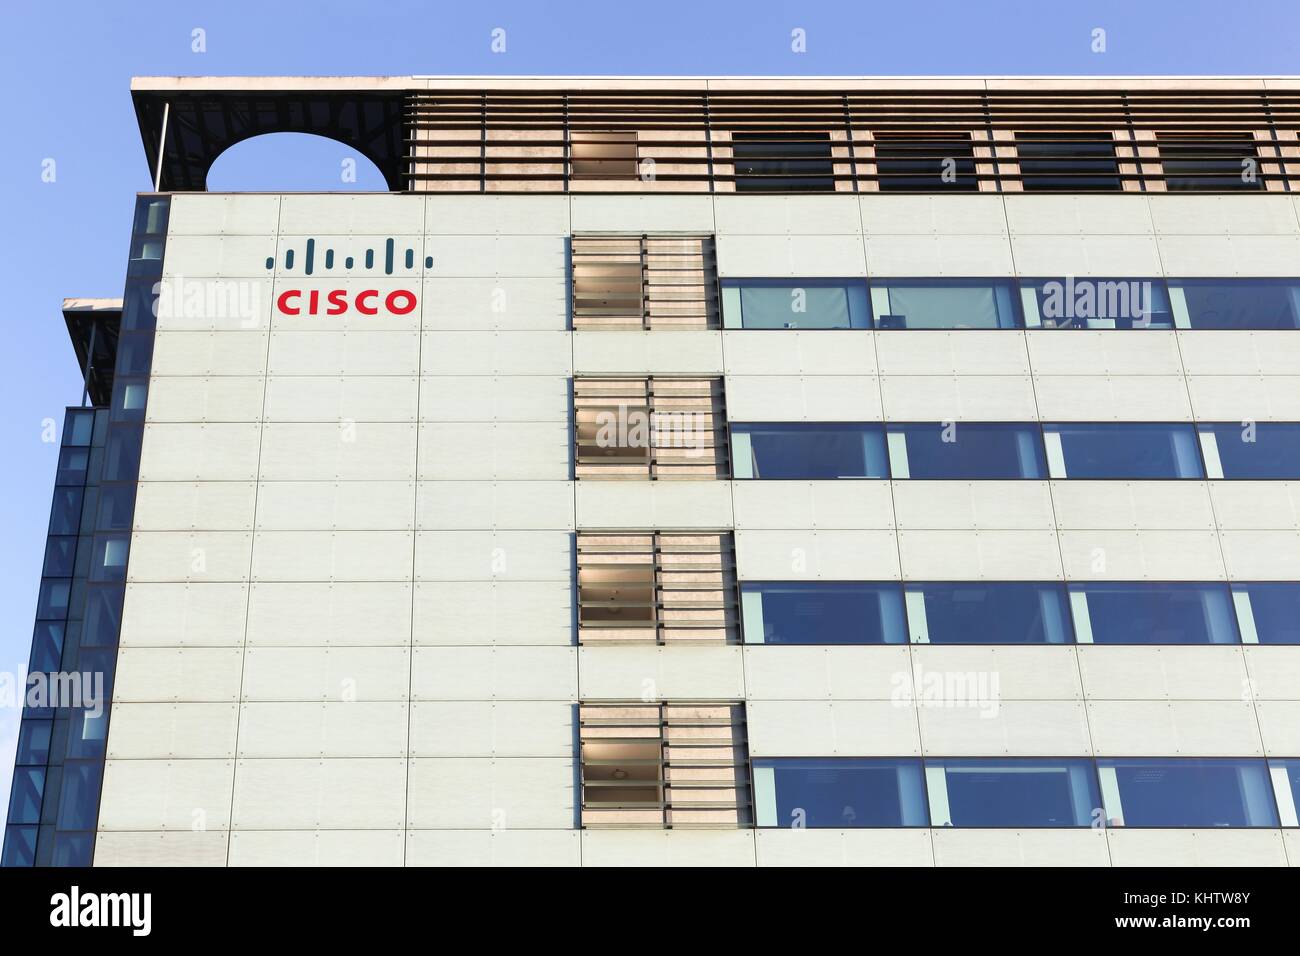 Copenhague, Danemark - septembre 10, 2017 Cisco Systems : bâtiment à Copenhague. Cisco Systems est une multinationale américaine conglomérat technologie Banque D'Images